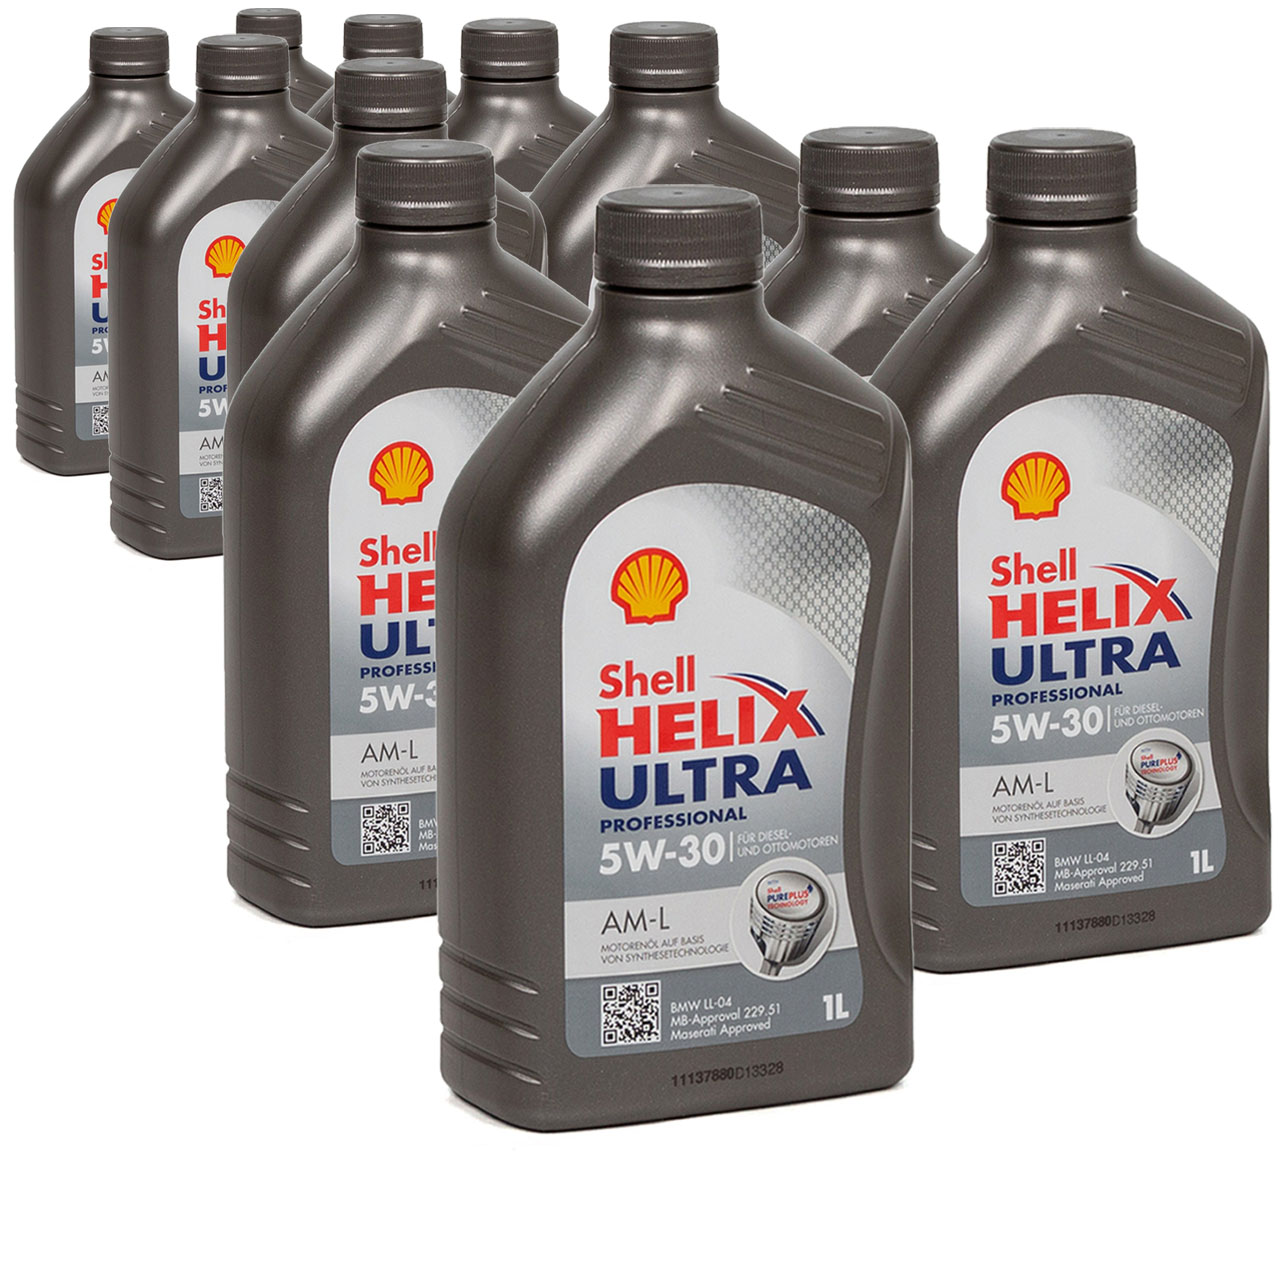 SHELL Motoröl Öl HELIX ULTRA Professional AM-L 5W30 für BMW LL-04 - 11L 11 Liter